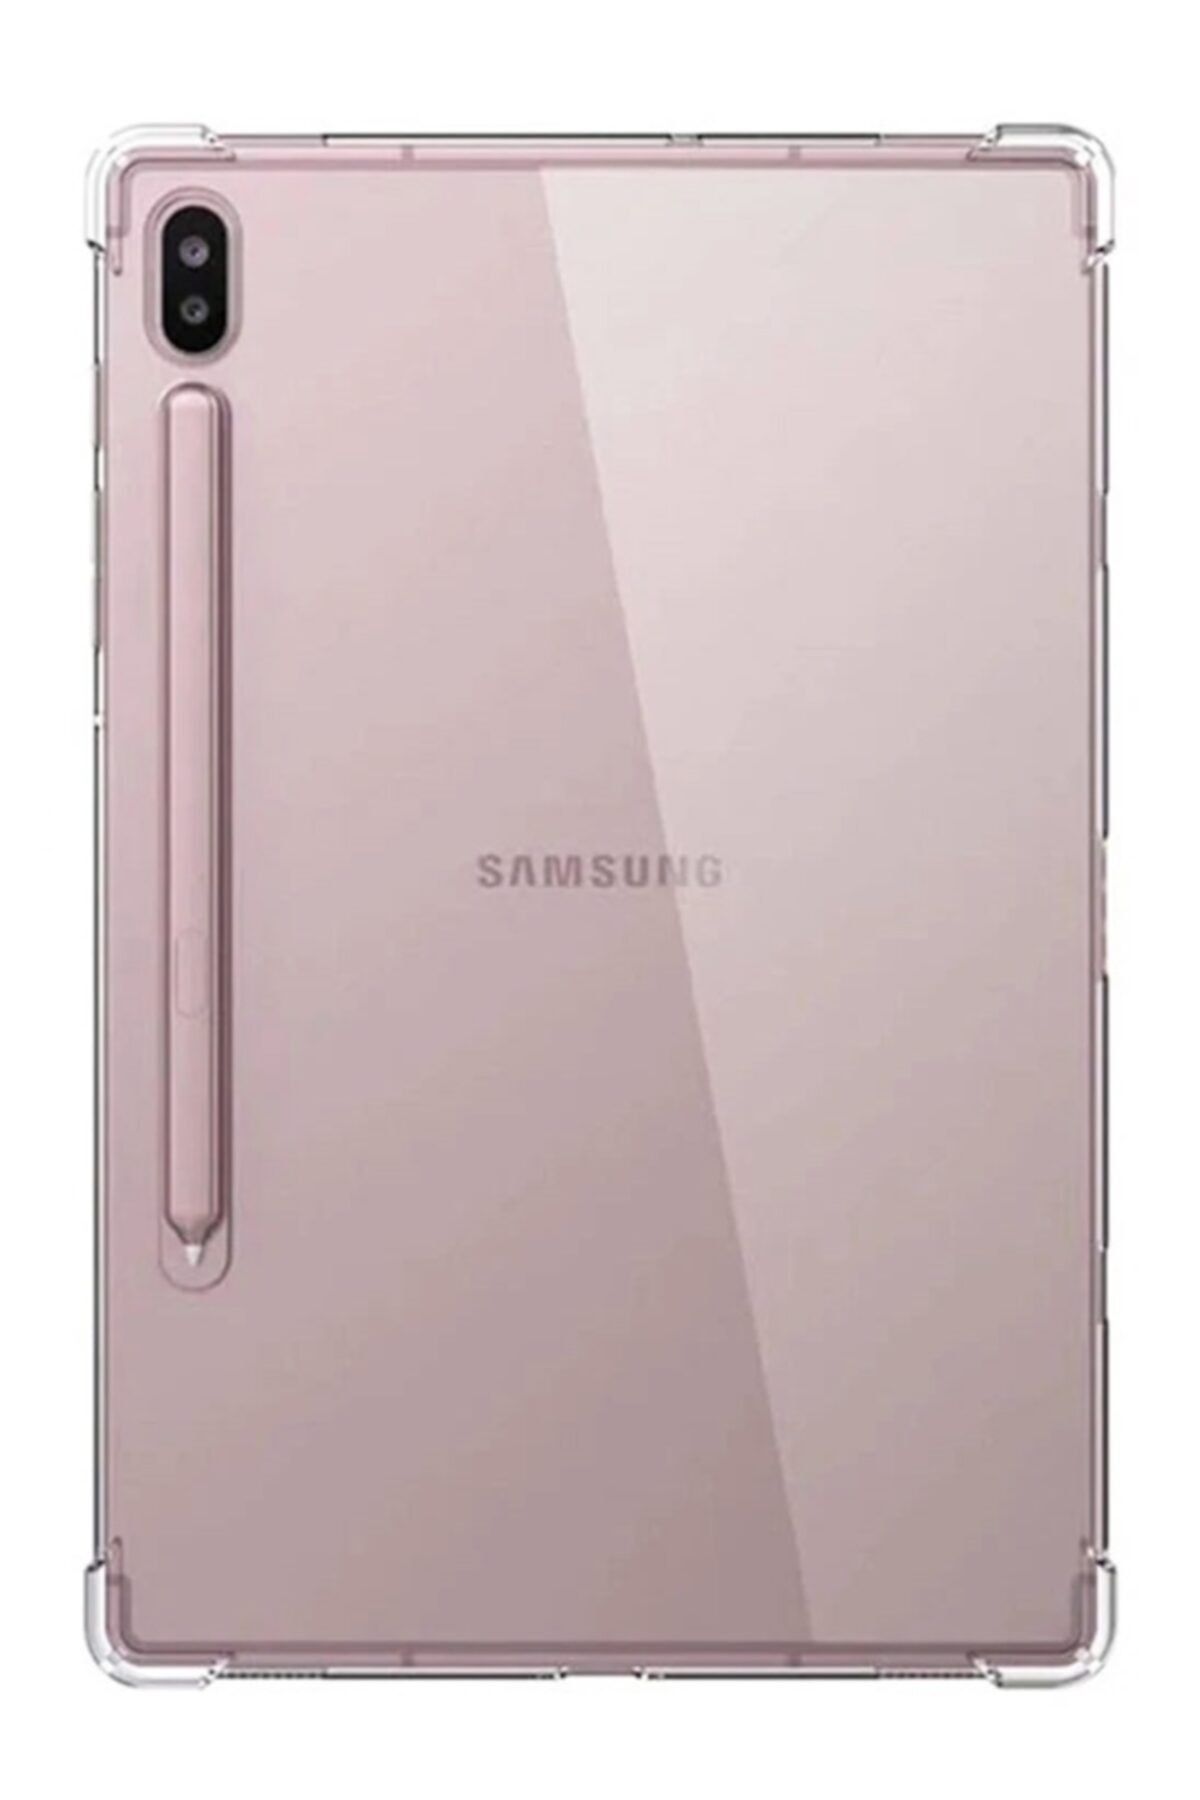 Dafoni Galaxy Tab S7 Plus T970 Uyumlu Ultra Koruma Silikon Kenarlı Şeffaf Kılıf